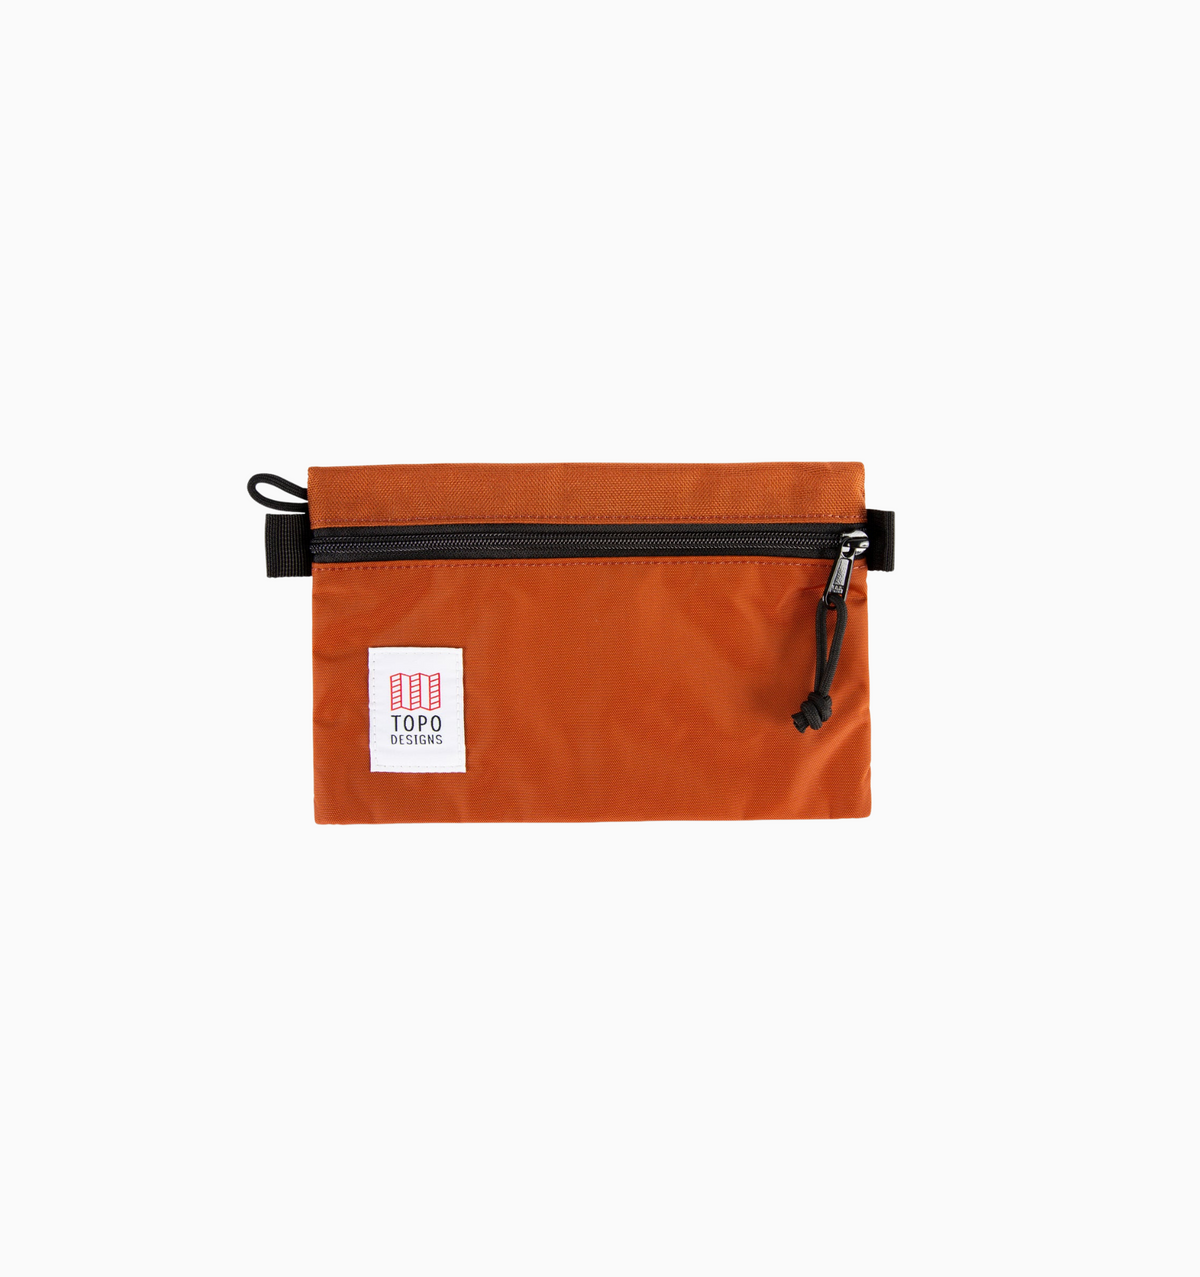 Topo Designs Small Accessory Bag - Clay